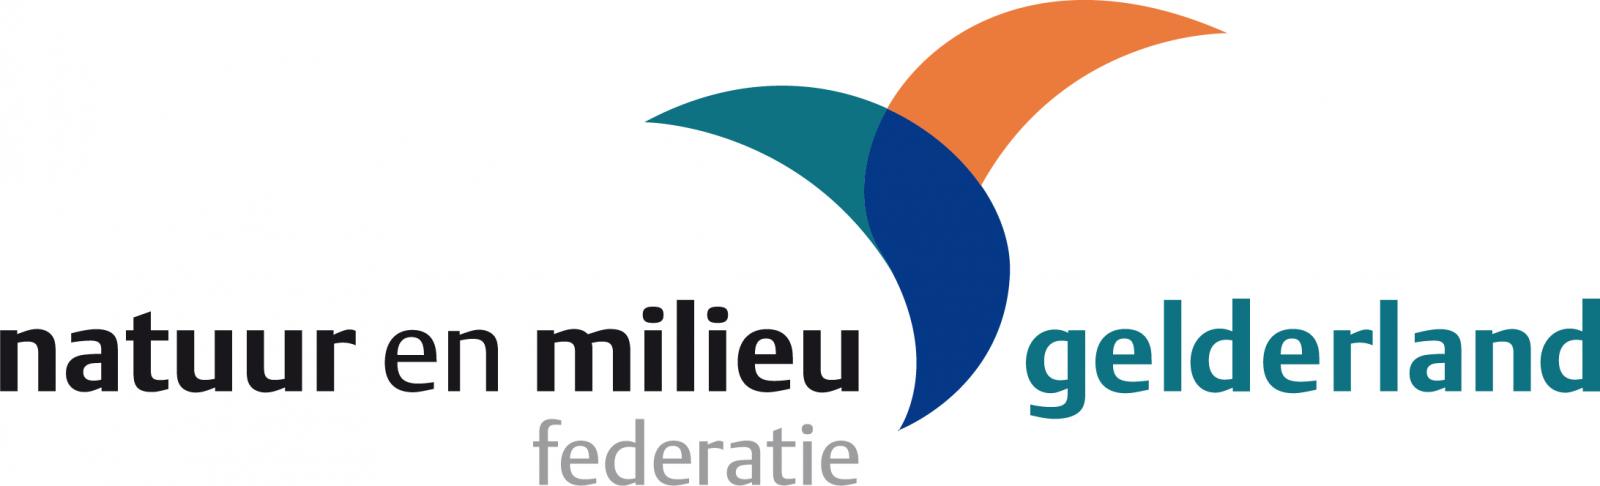 Natuur en milieu federatie Gelderland logo 2020 rgb